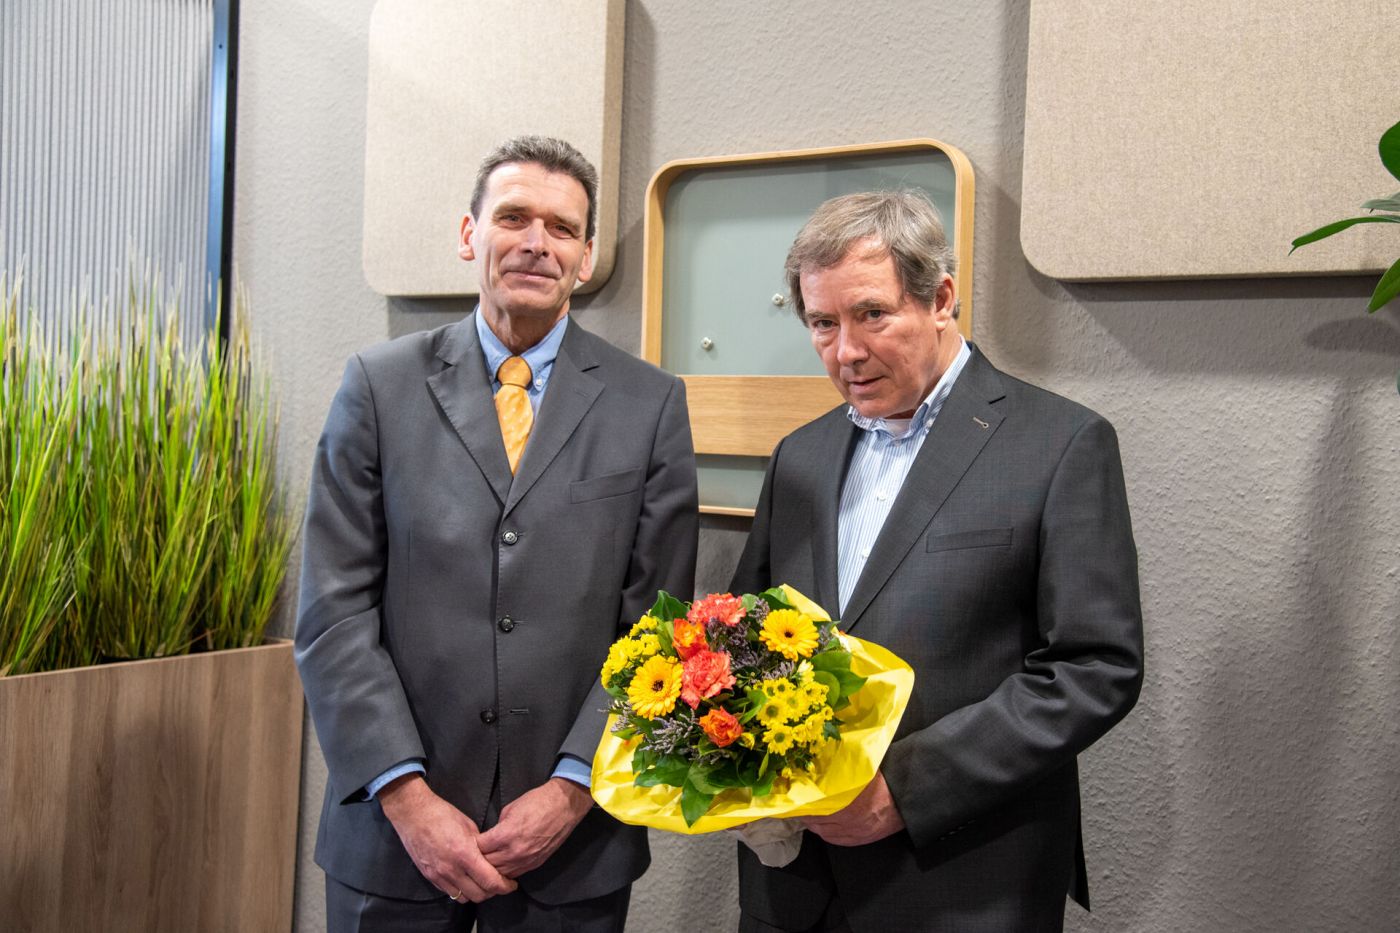 Zwei Männer, einer davon hält einen Blumenstrauß (Foto: FH Münster/Michelle Liedtke)